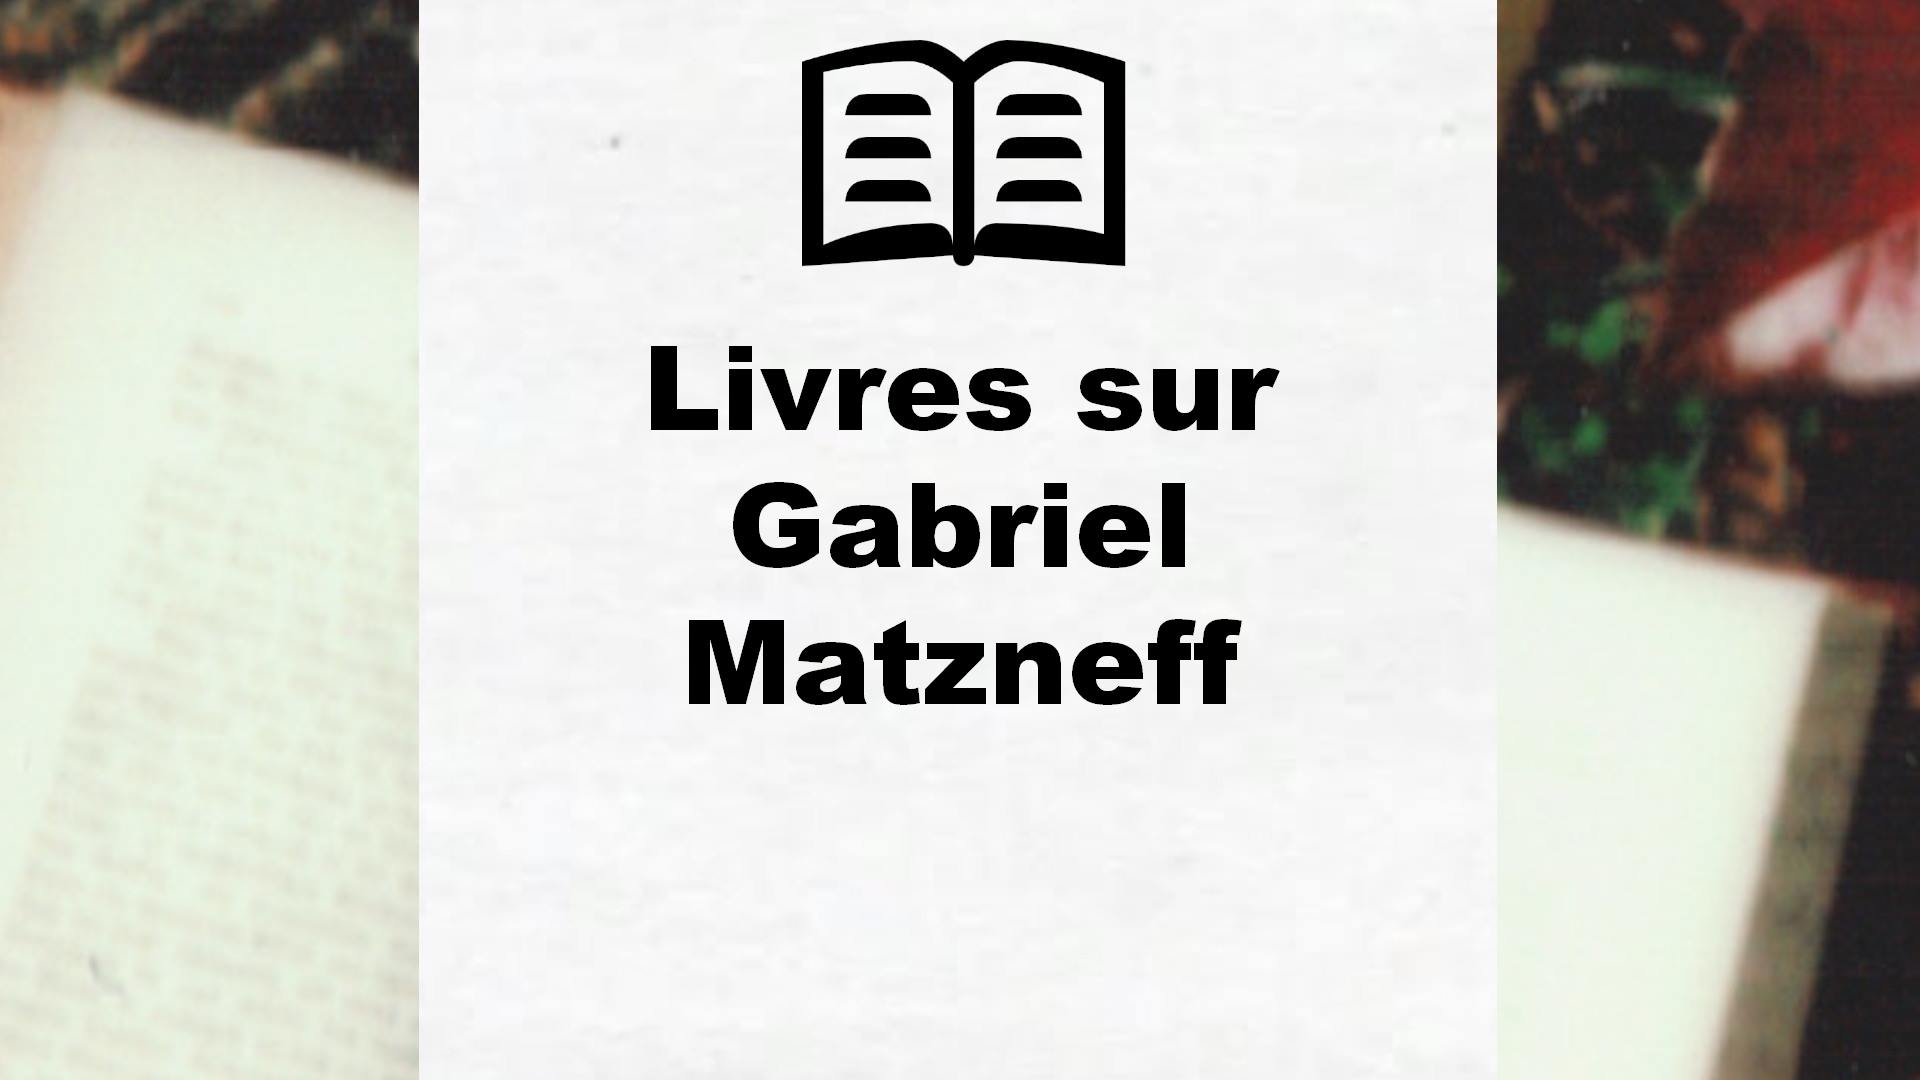 Livres sur Gabriel Matzneff